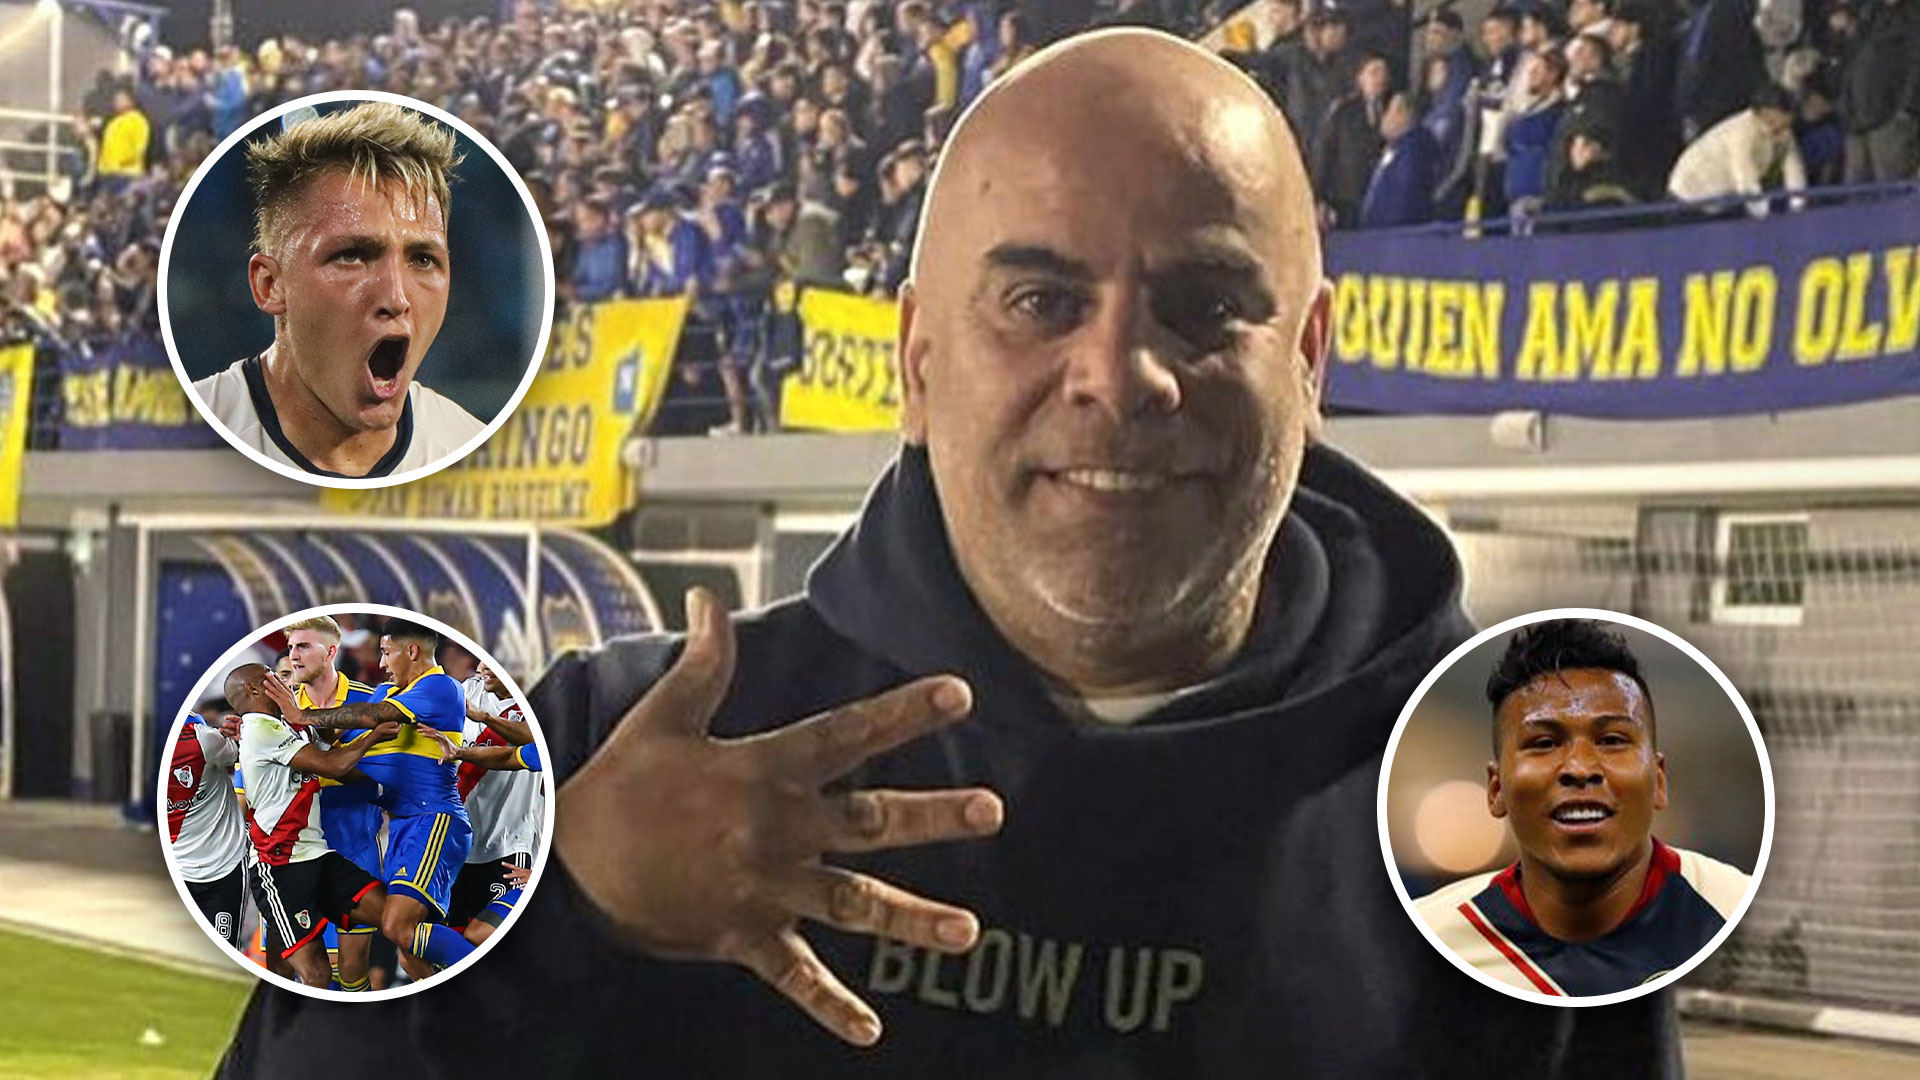 Las bombas de Chicho Serna: dardo por el Superclásico, fuerte mensaje por el Caso Retegui y qué refuerzos buscará Boca Juniors